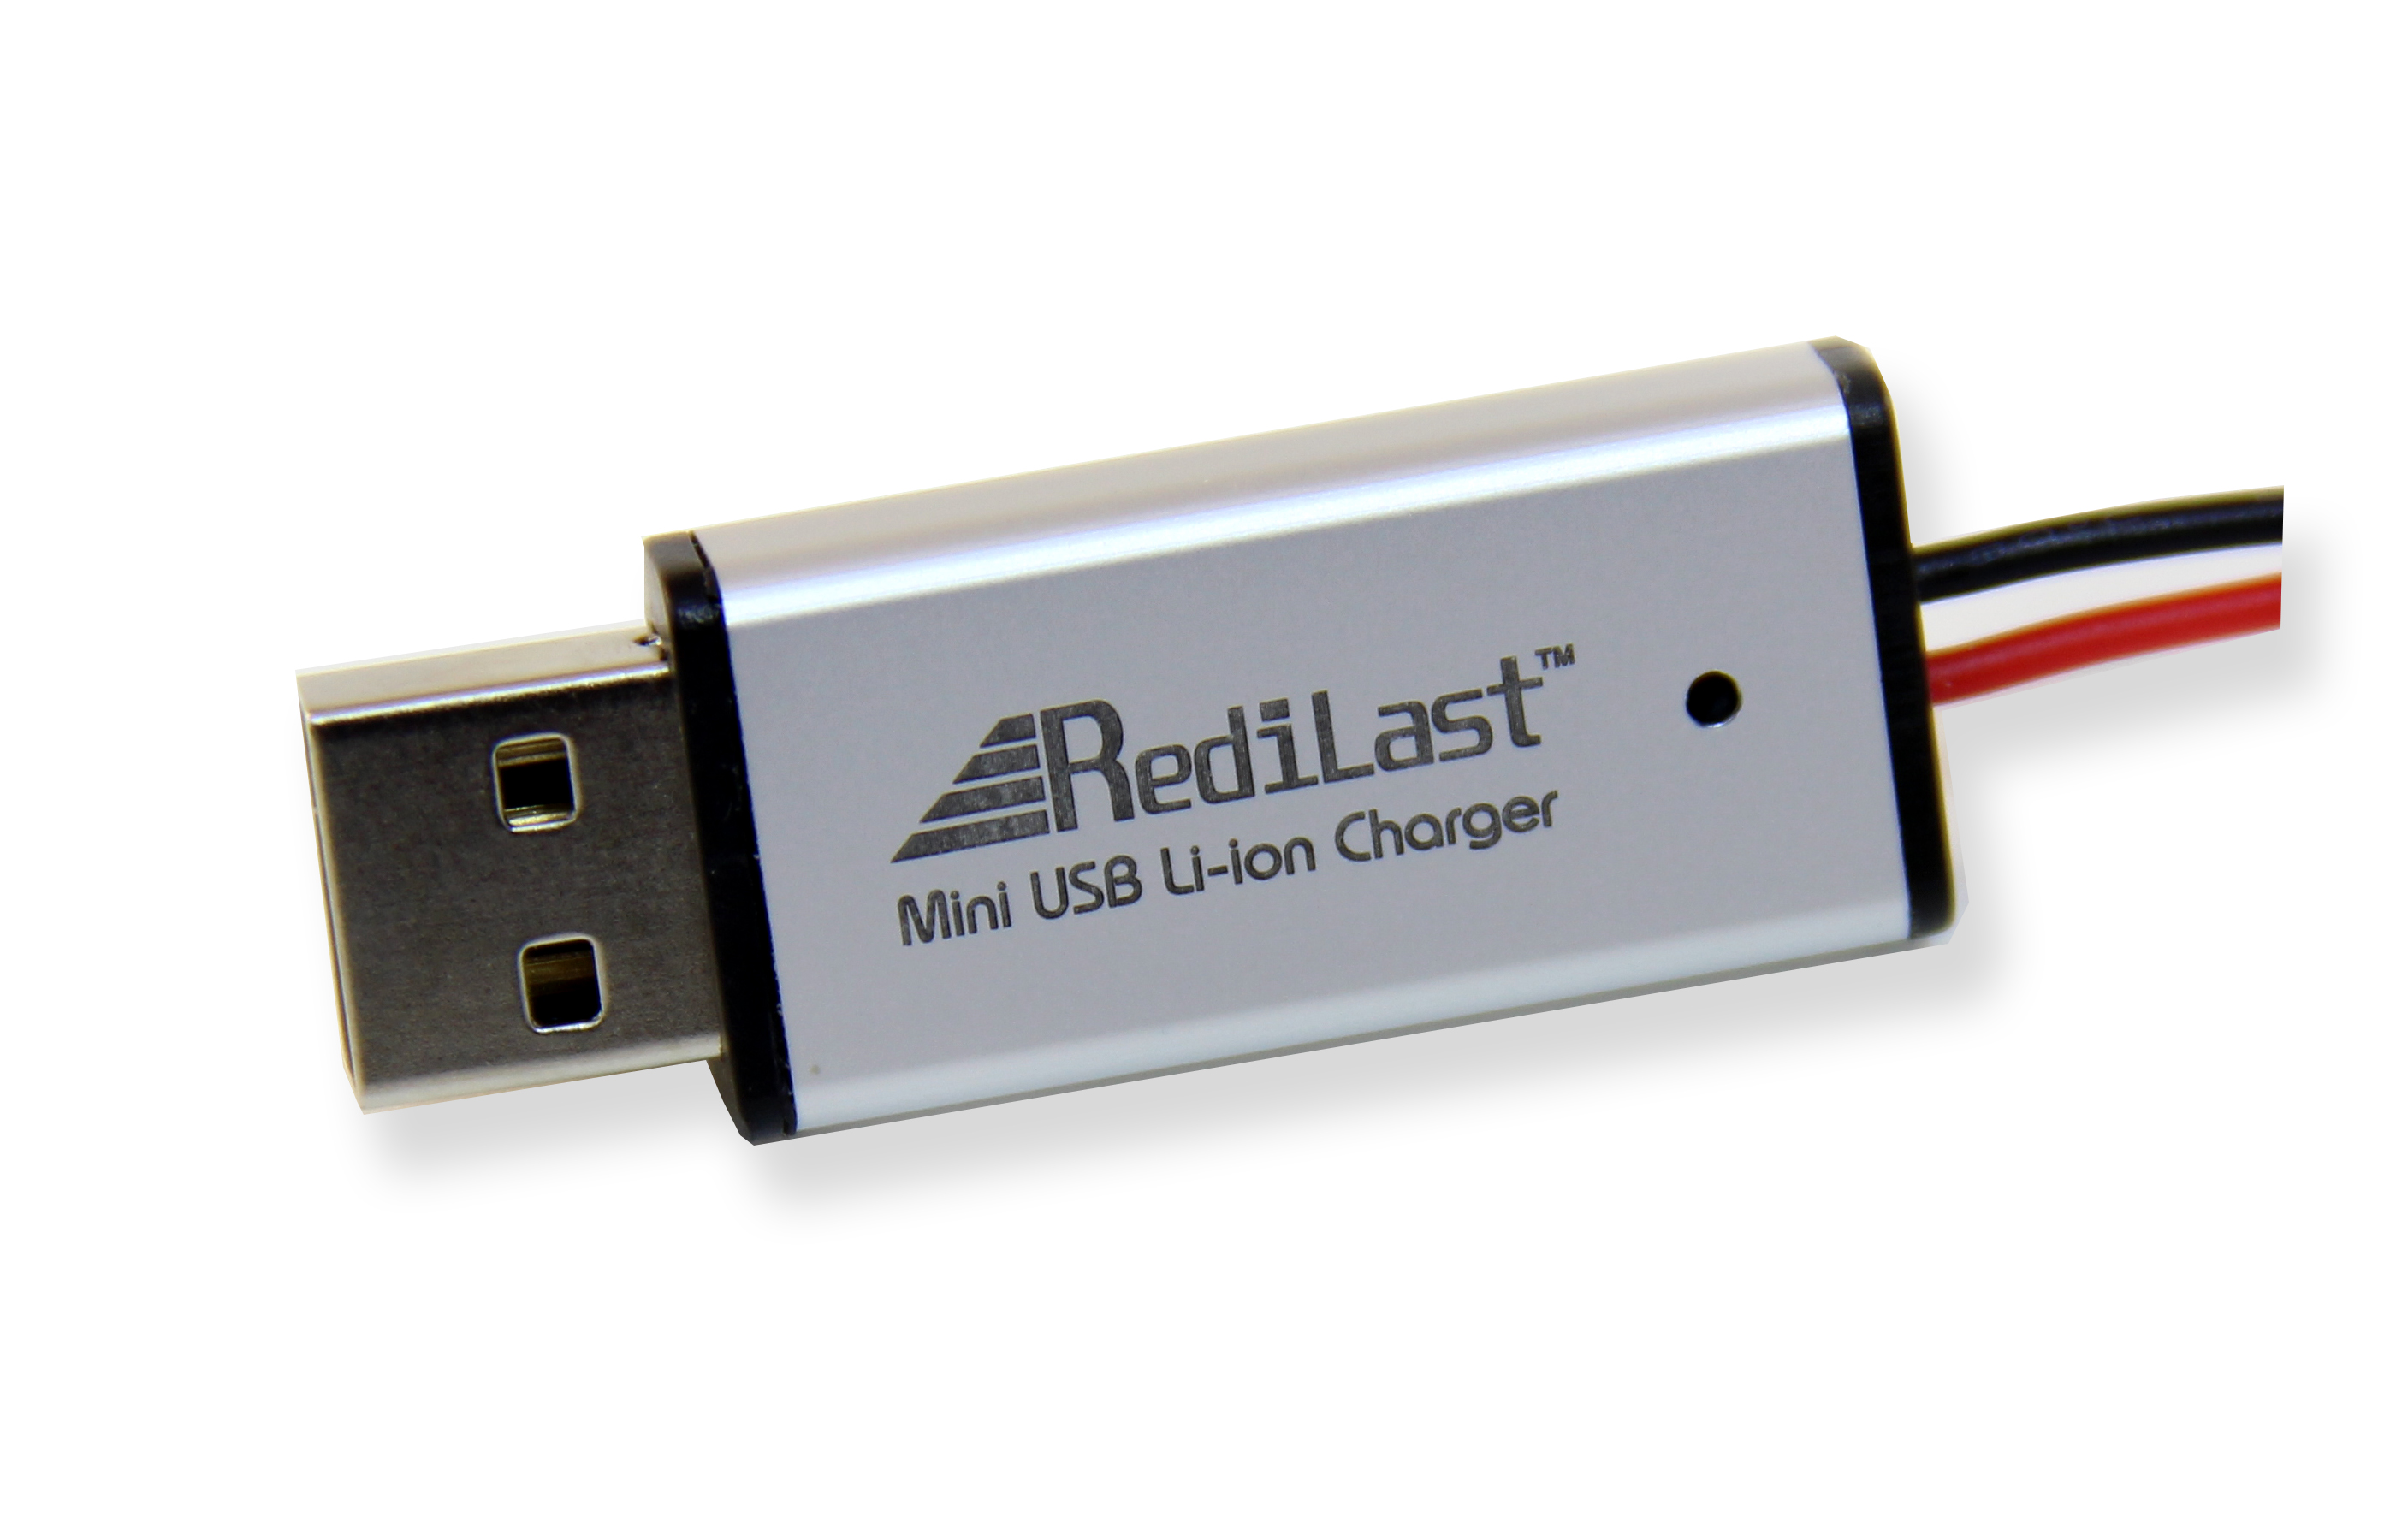 Redilast Mini USB Li-ion Charger (100mA)